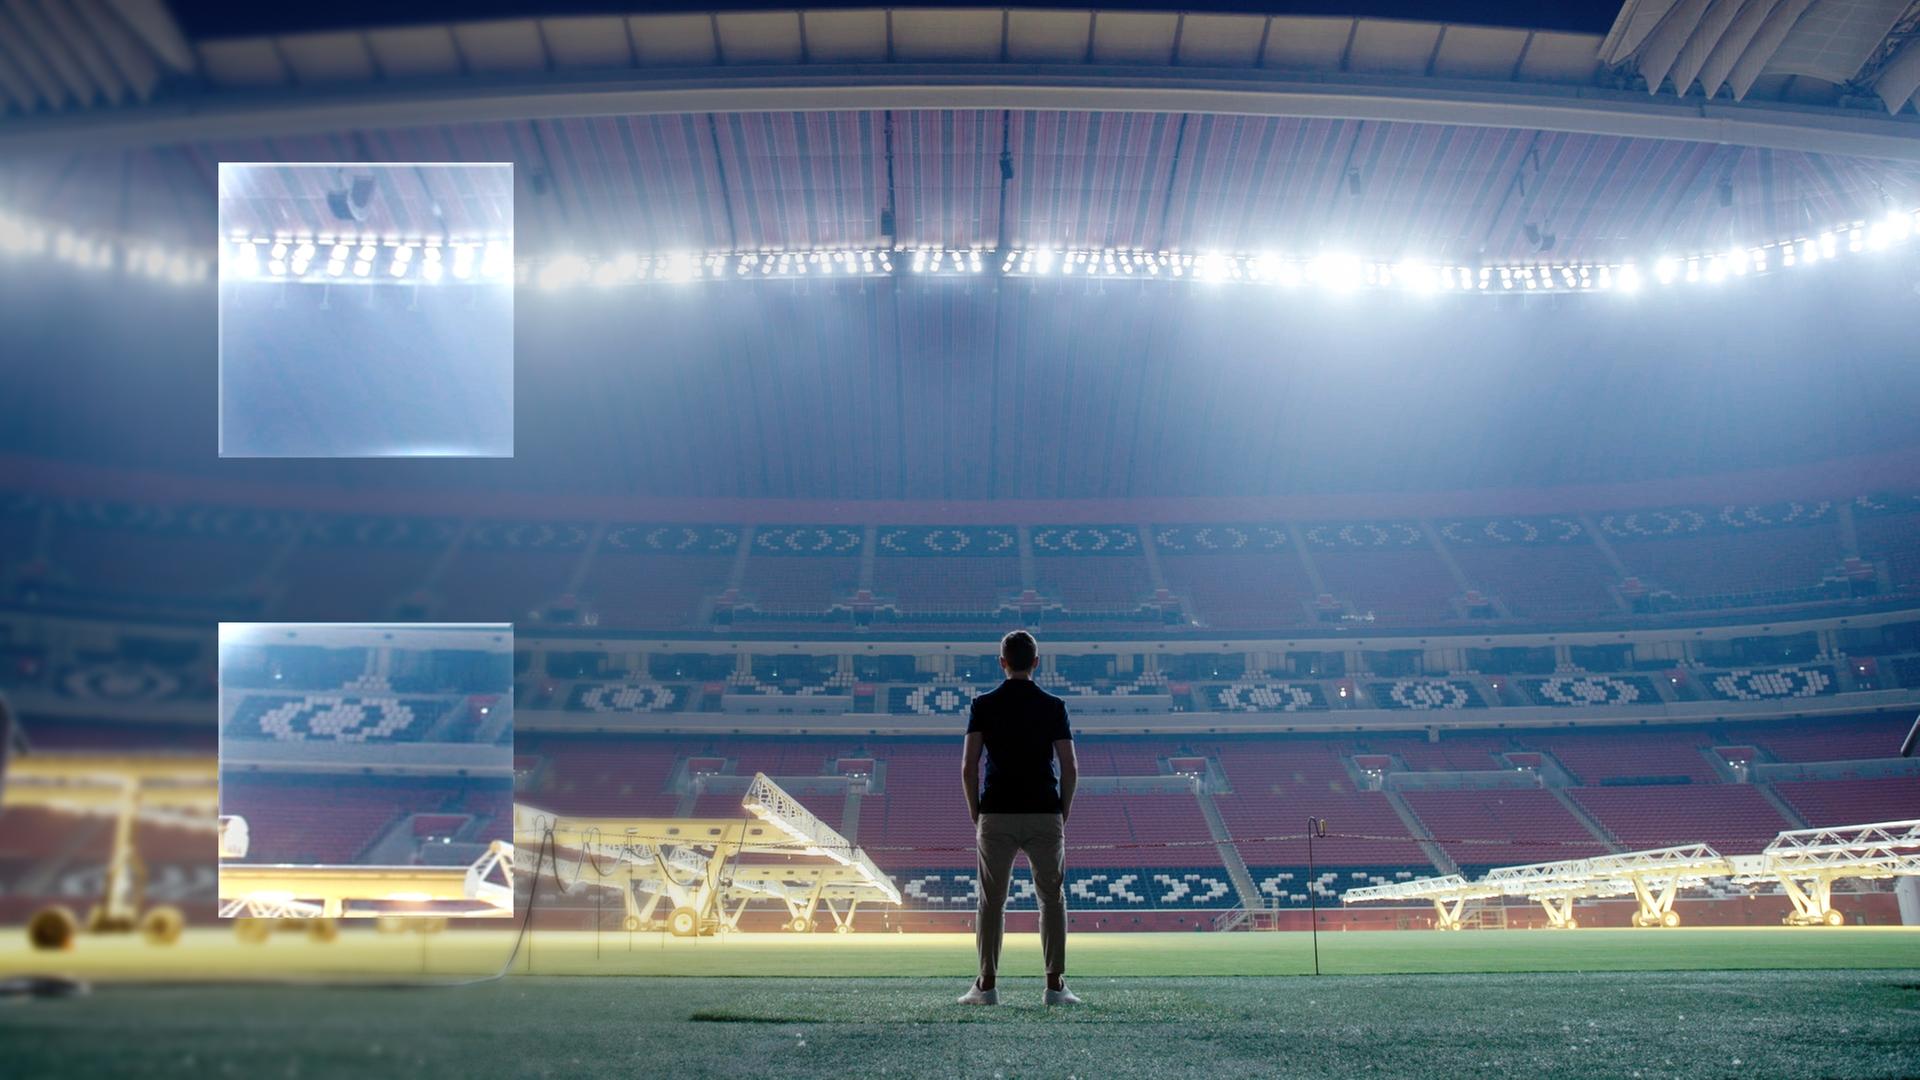 "ZDFzeit: Geheimsache Katar": Blick in ein leeres, hell beleuchtetes Fußballstadion. In der Mitte sind die dunklen Umrisse eines Menschen zu erkennen, der dem Betrachter den Rücken zukehrt